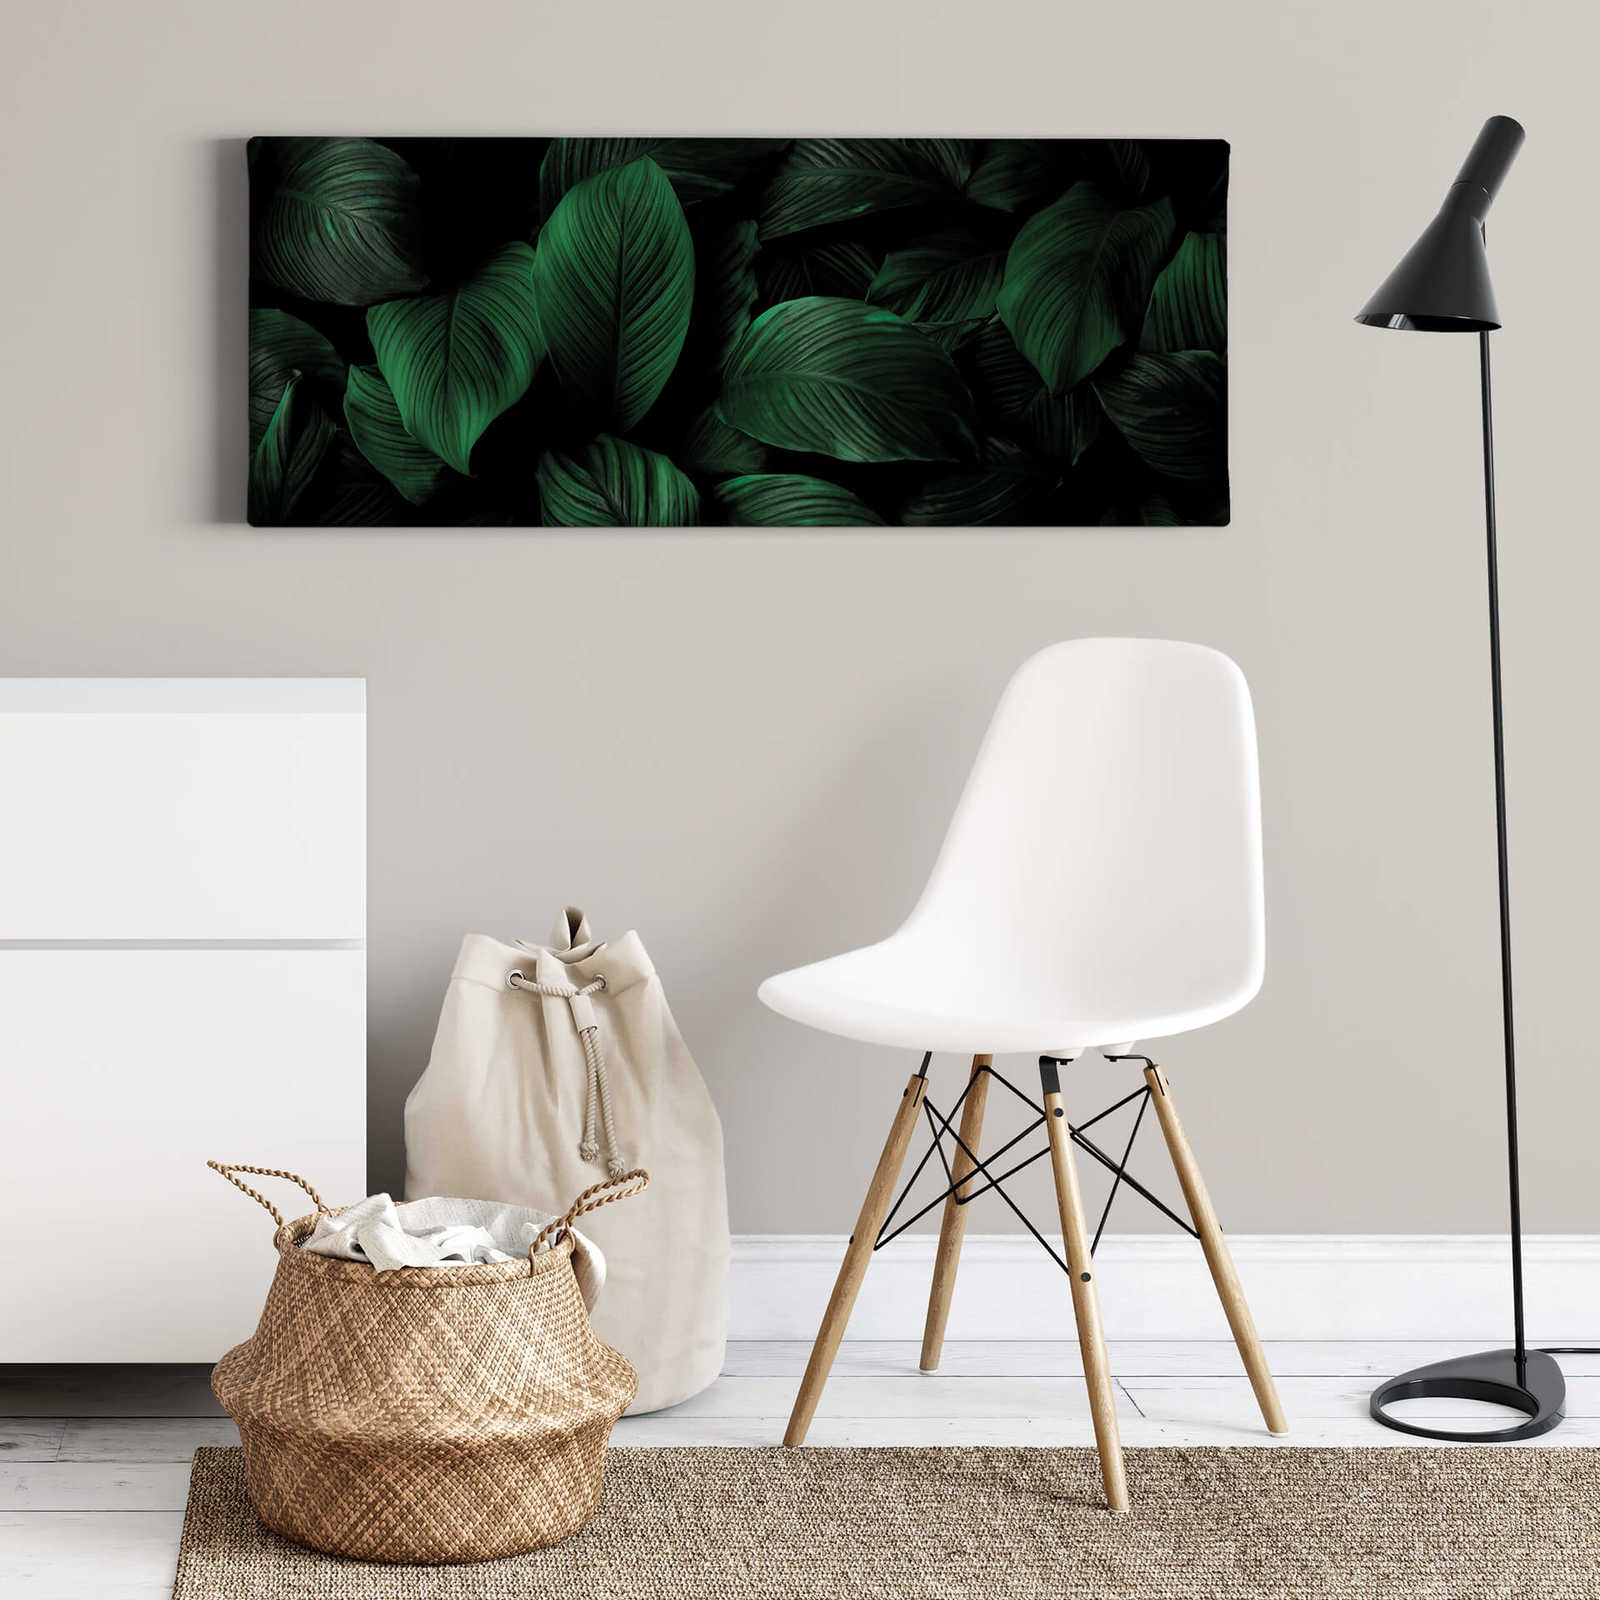             Tableau panoramique sur toile, aspect feuillage, vert, noir - 1,00 m x 0,40 m
        